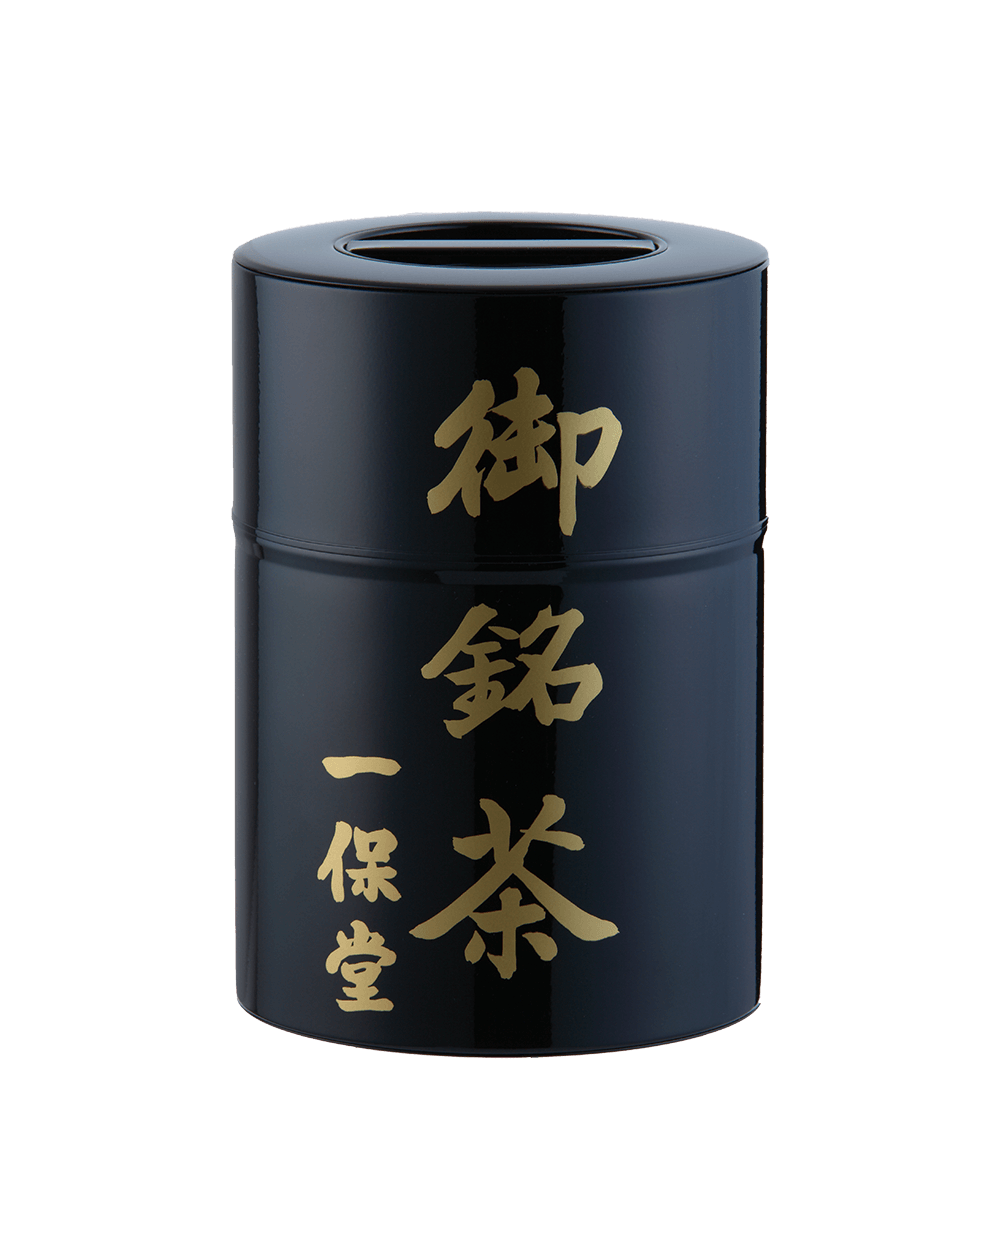 極上ほうじ茶手付き塗り缶箱(200g) – 一保堂茶舗